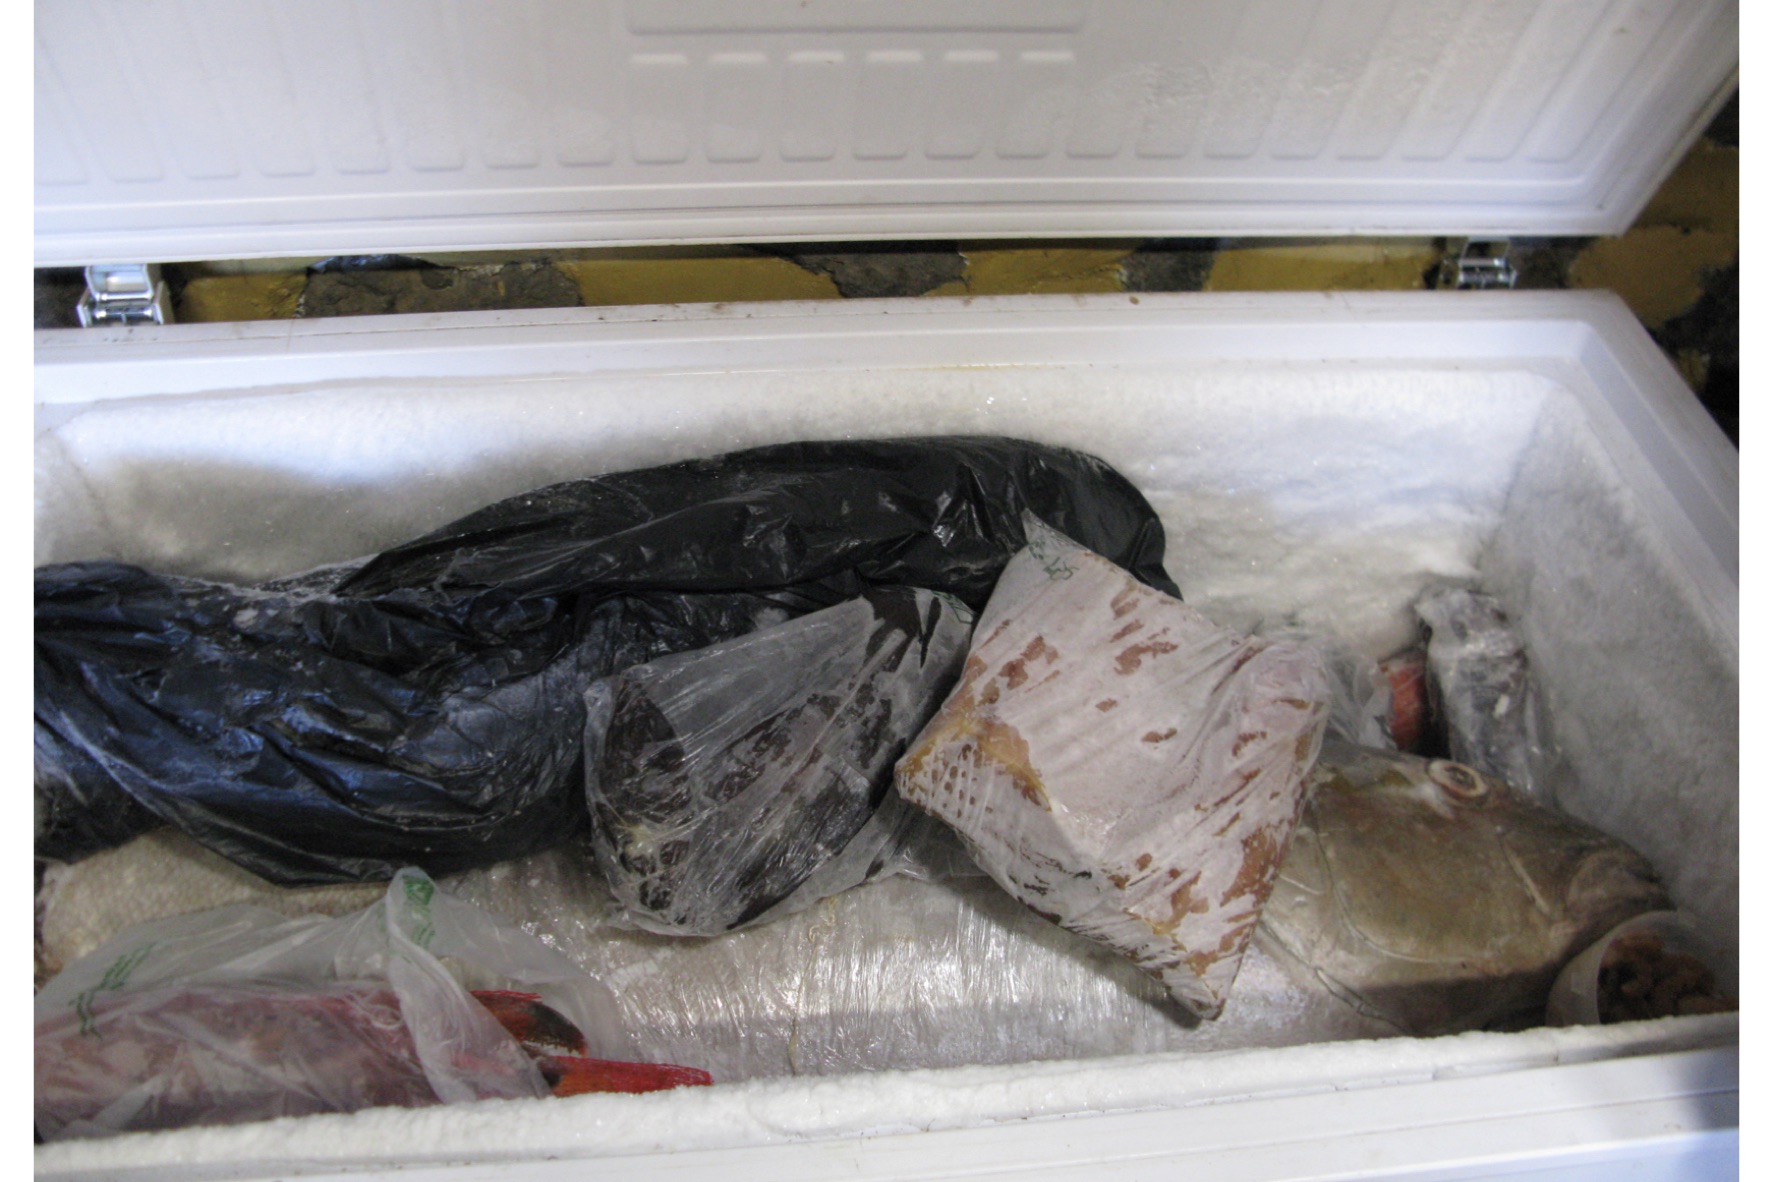  La Guardia Civil inmoviliza más de 100 kg de pescado en un restaurante en la isla de El Hierro